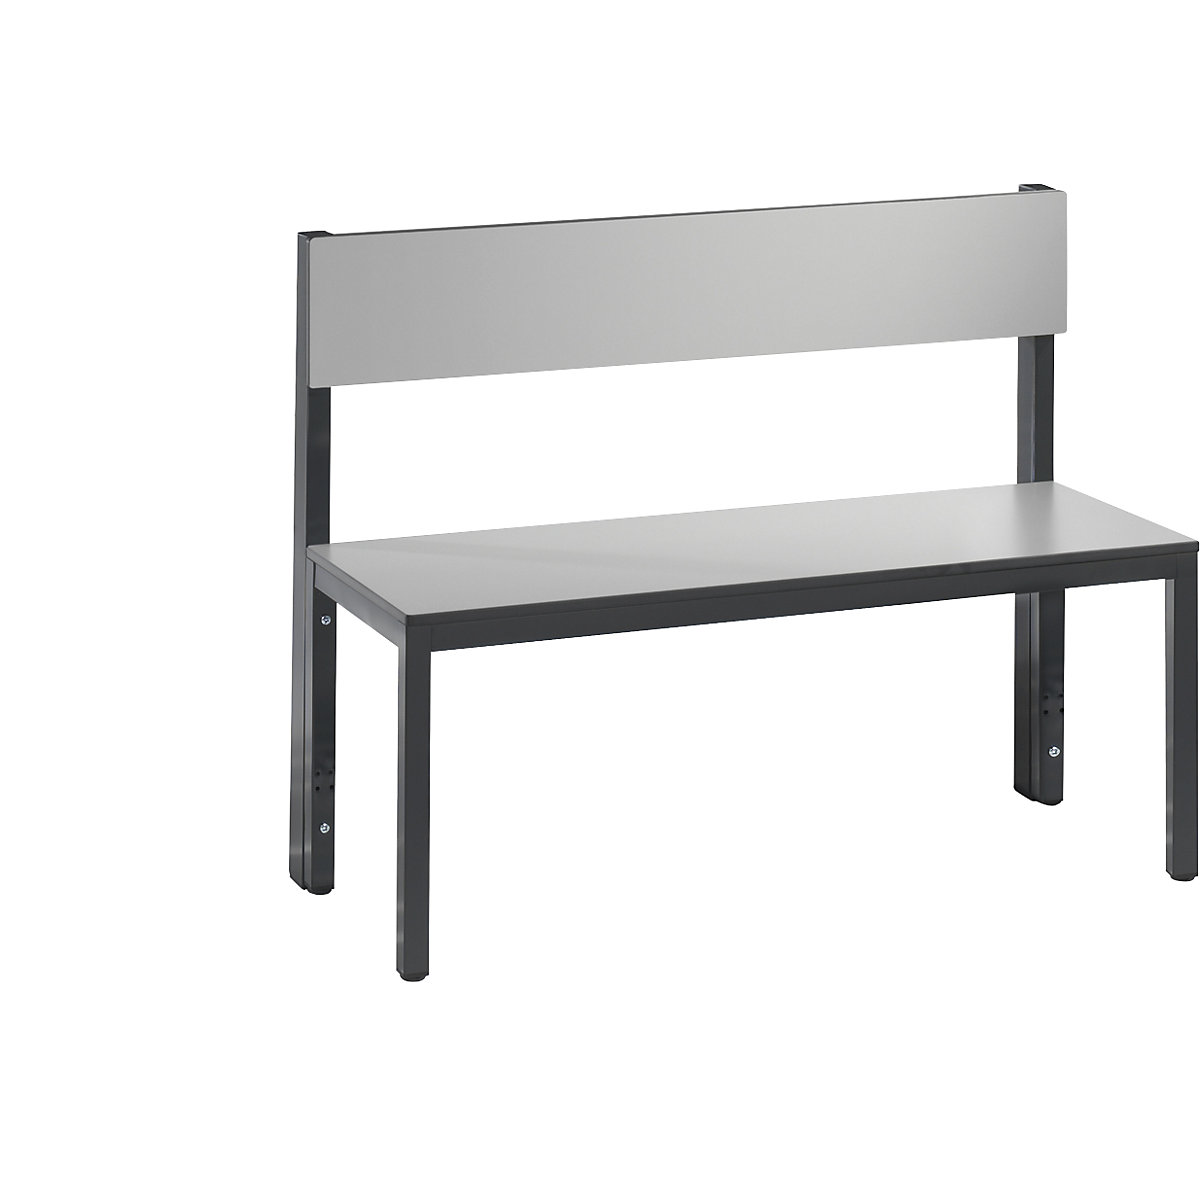 Ławka do szatni BASIC PLUS, jednostronna – C+P, powierzchnia do siedzenia z HPL, średniej wysokości, dł. 1000 mm, srebrno-szara-8